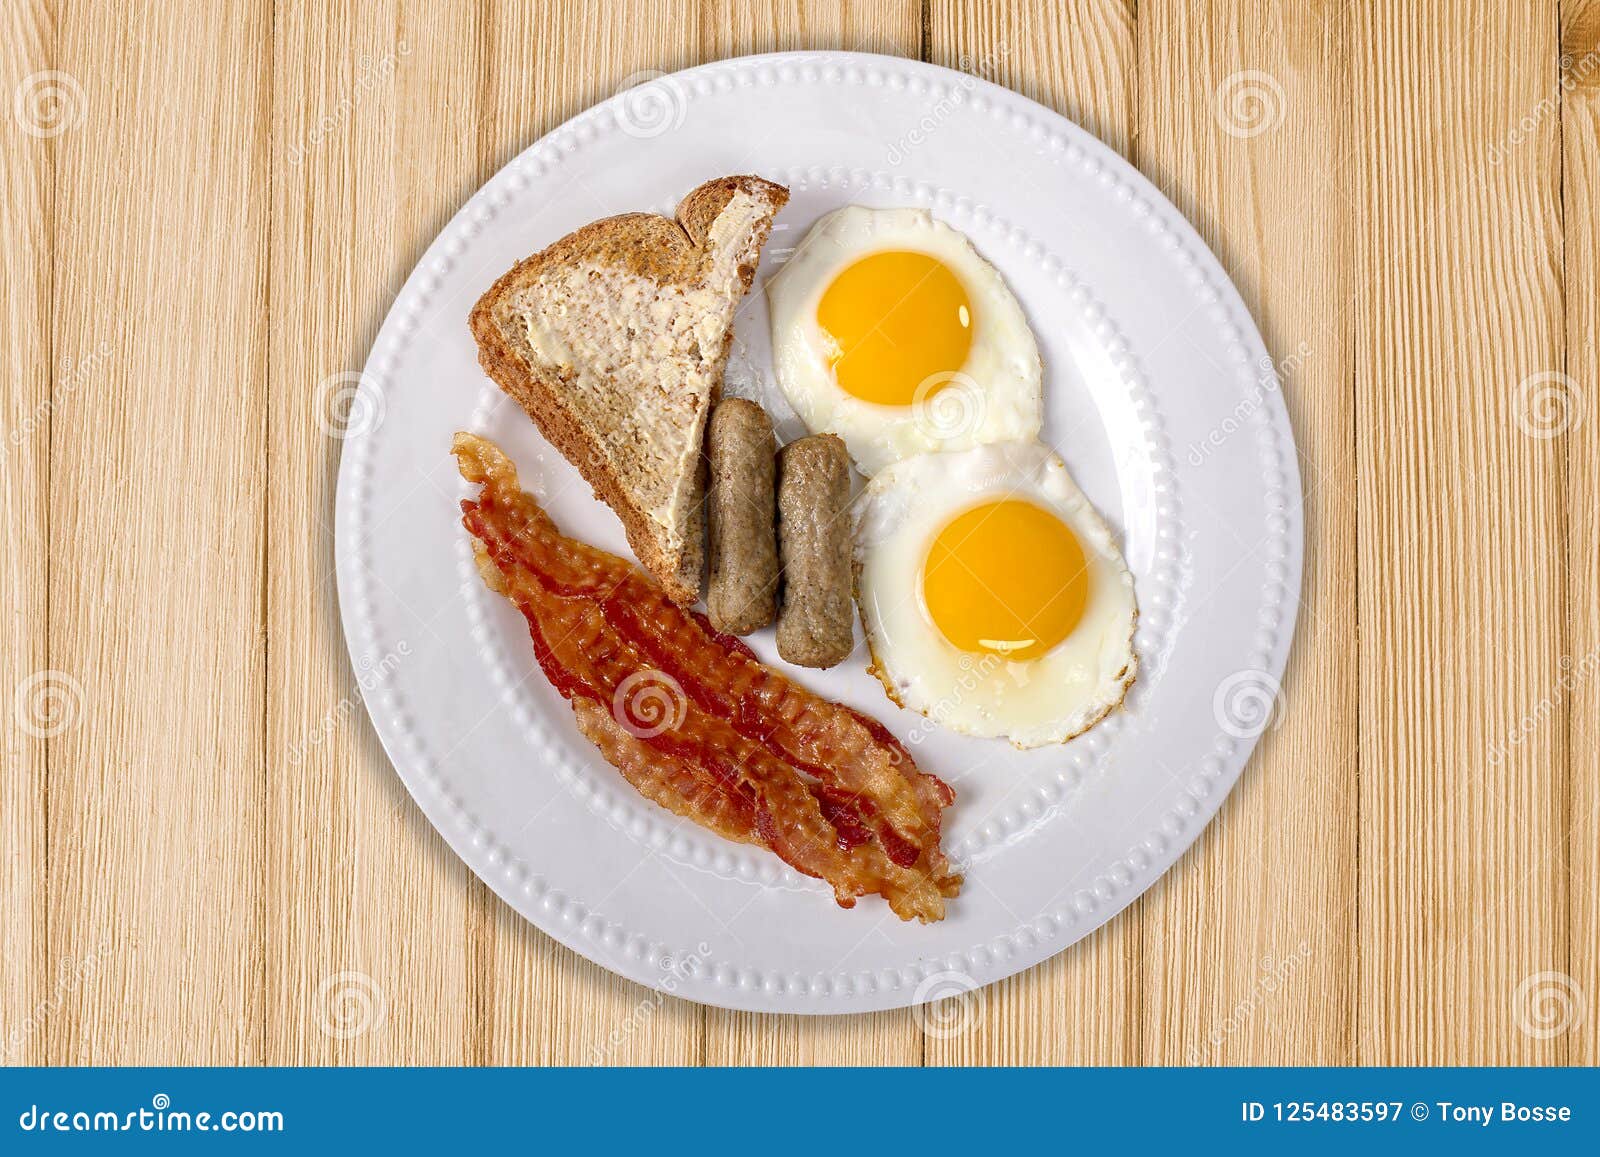 topside breakfast platter